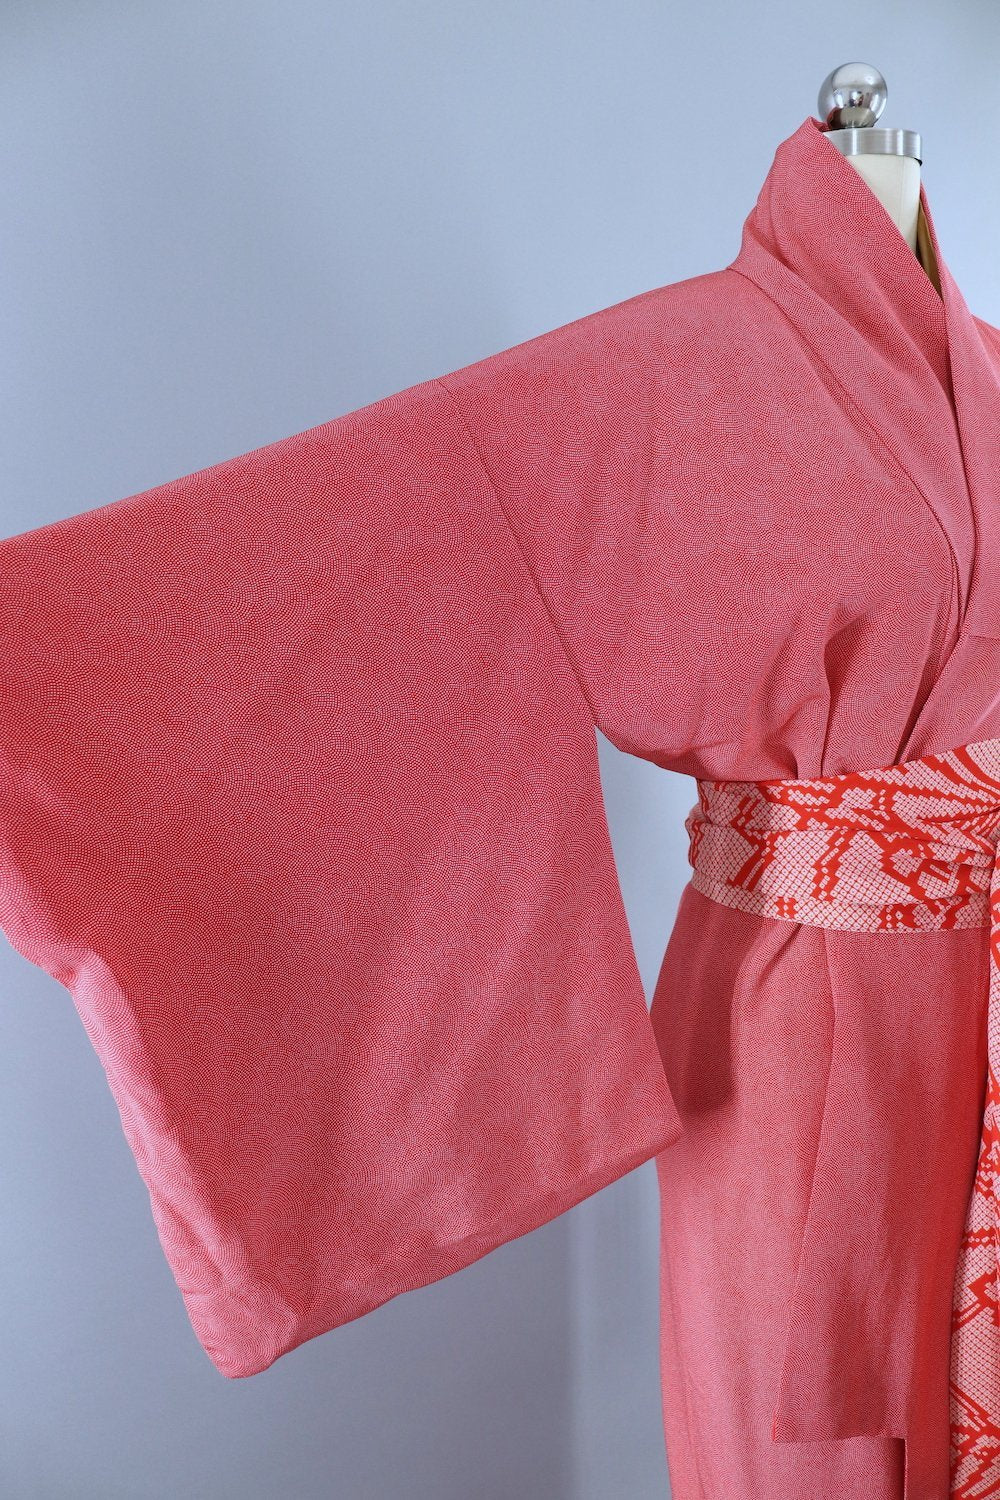 Vintage Silk Kimono Robe / Red & White Tiny Polka Dots - ThisBlueBird